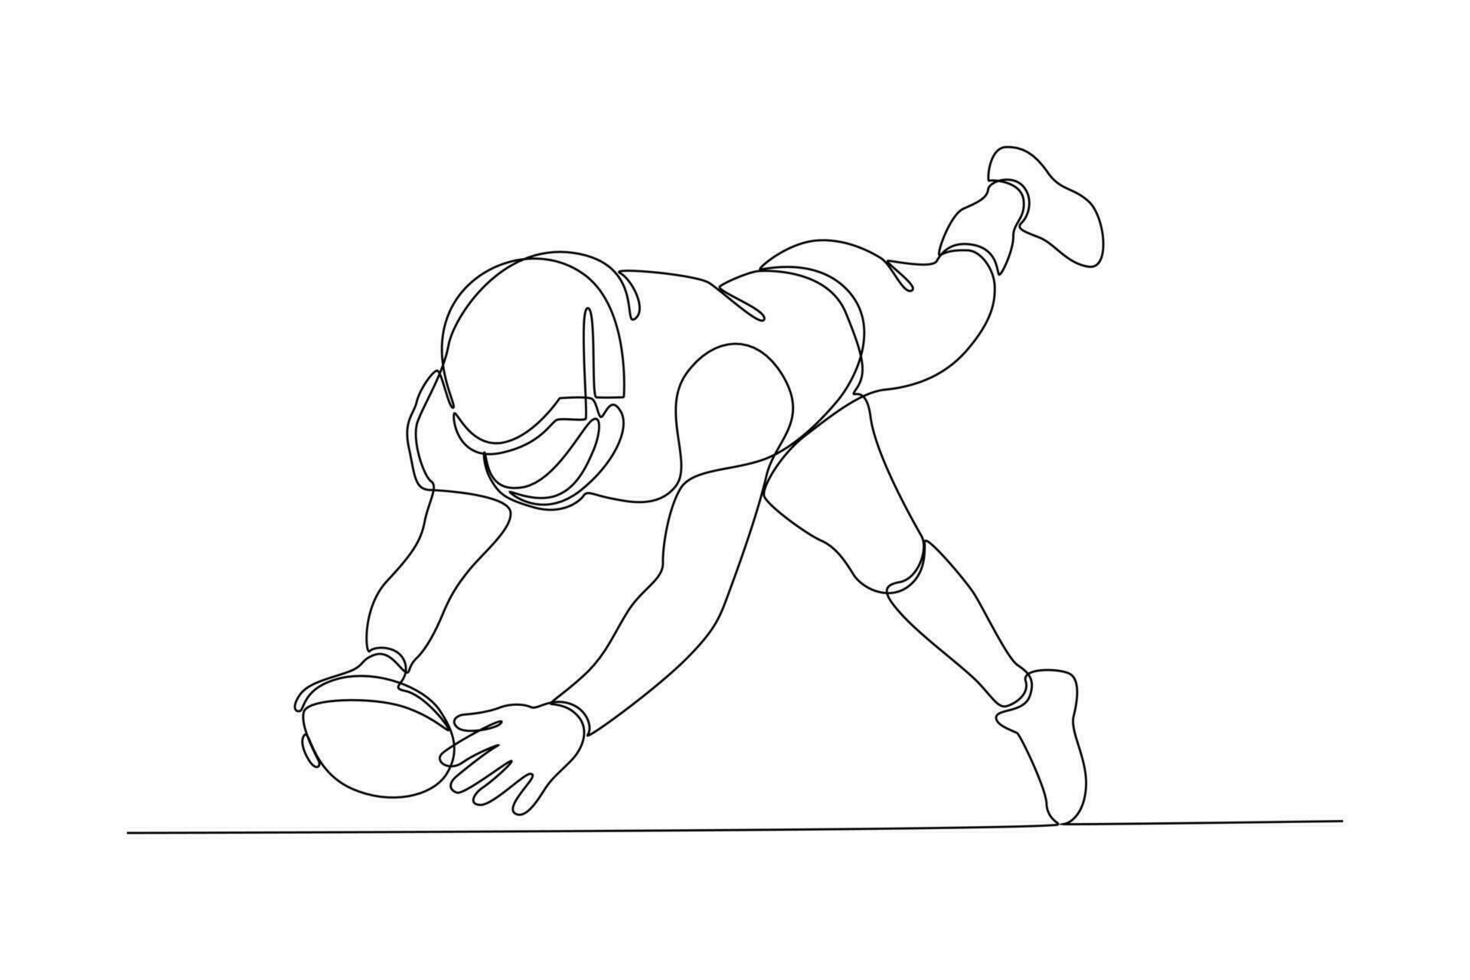 kontinuierlich einer Linie Zeichnung Rugby Spieler Konzept. Sportler spielen mit Ball. Gekritzel Vektor Illustration.